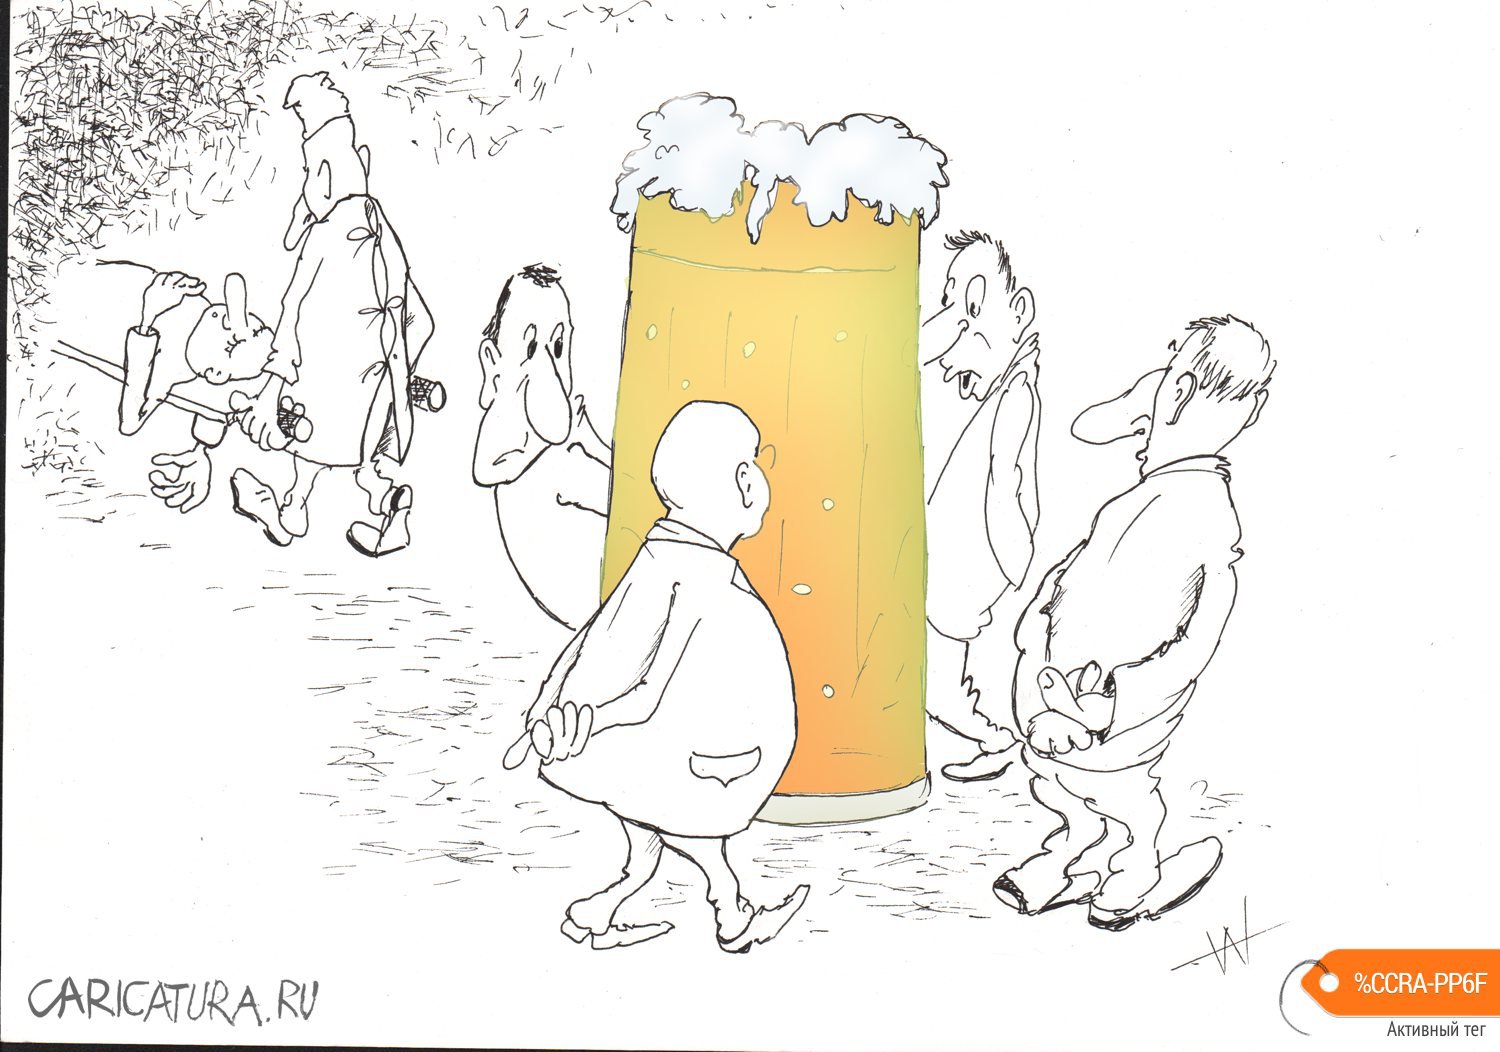 Карикатура "Пиво", Александр Шауров